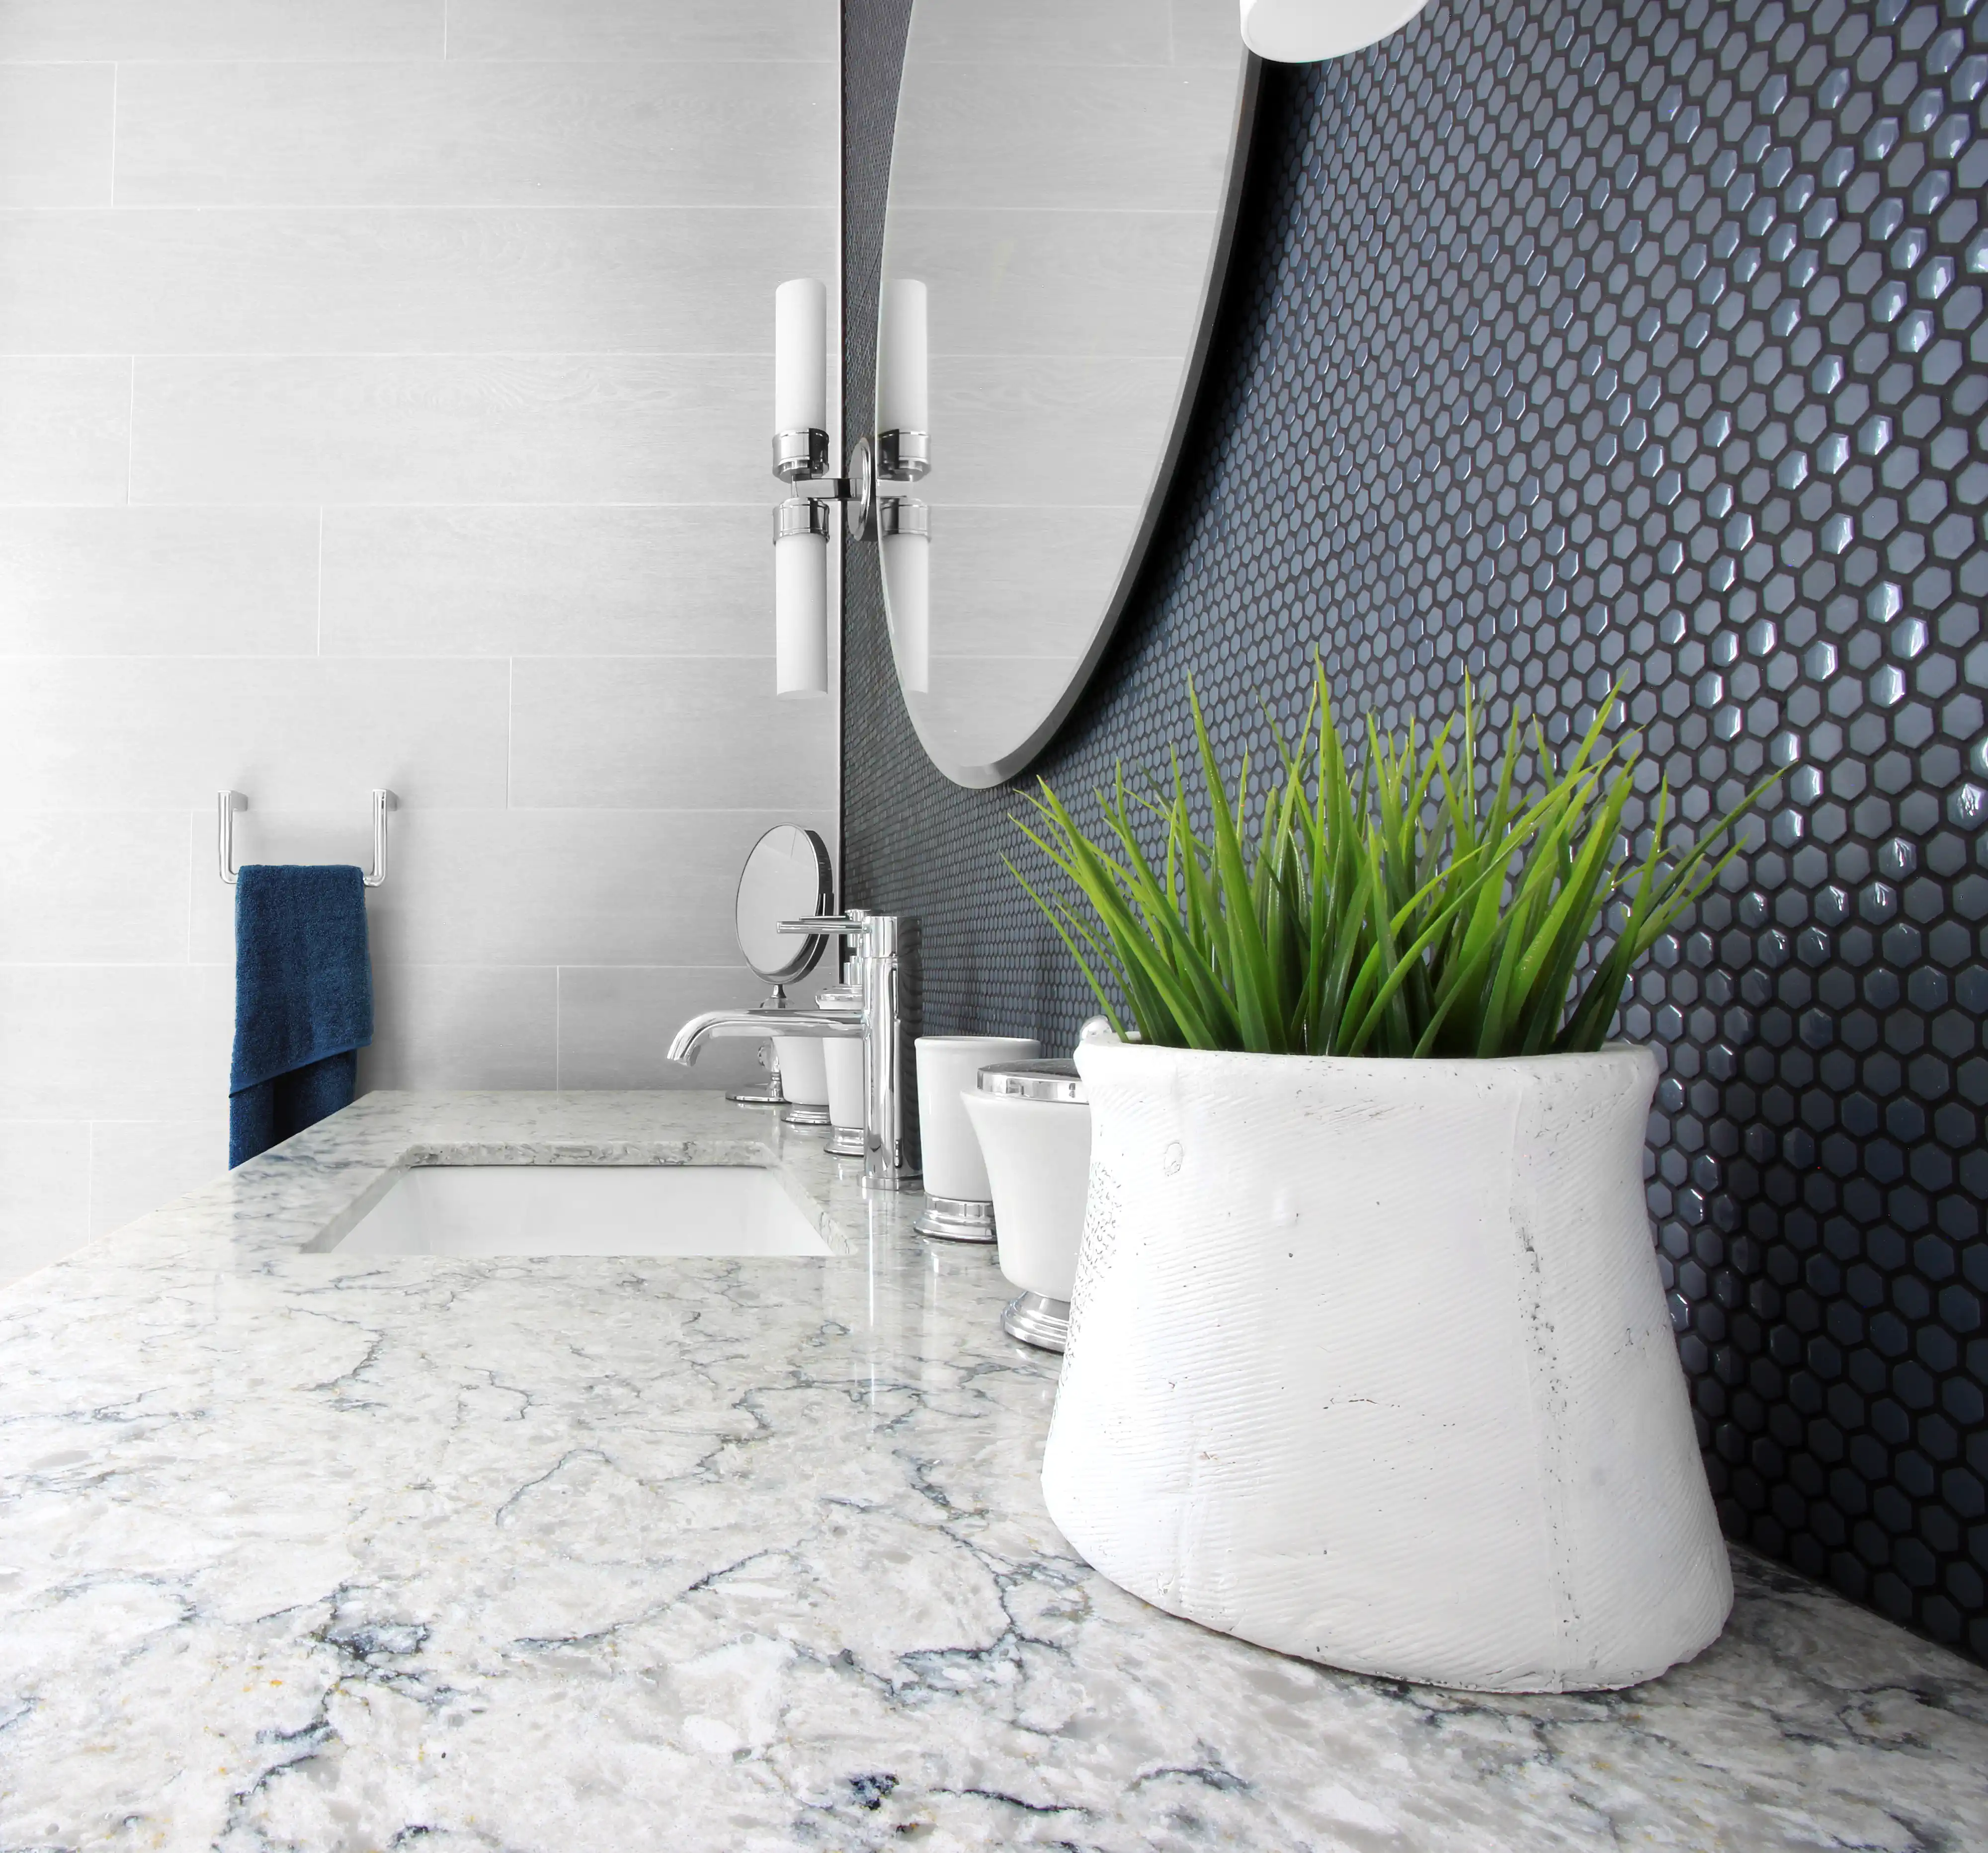 Un lavabo et un plan de travail de salle de bain moderne avec du marbre blanc et des carreaux hexagonaux bleu foncé, intérieur signé Sarah Brown Design